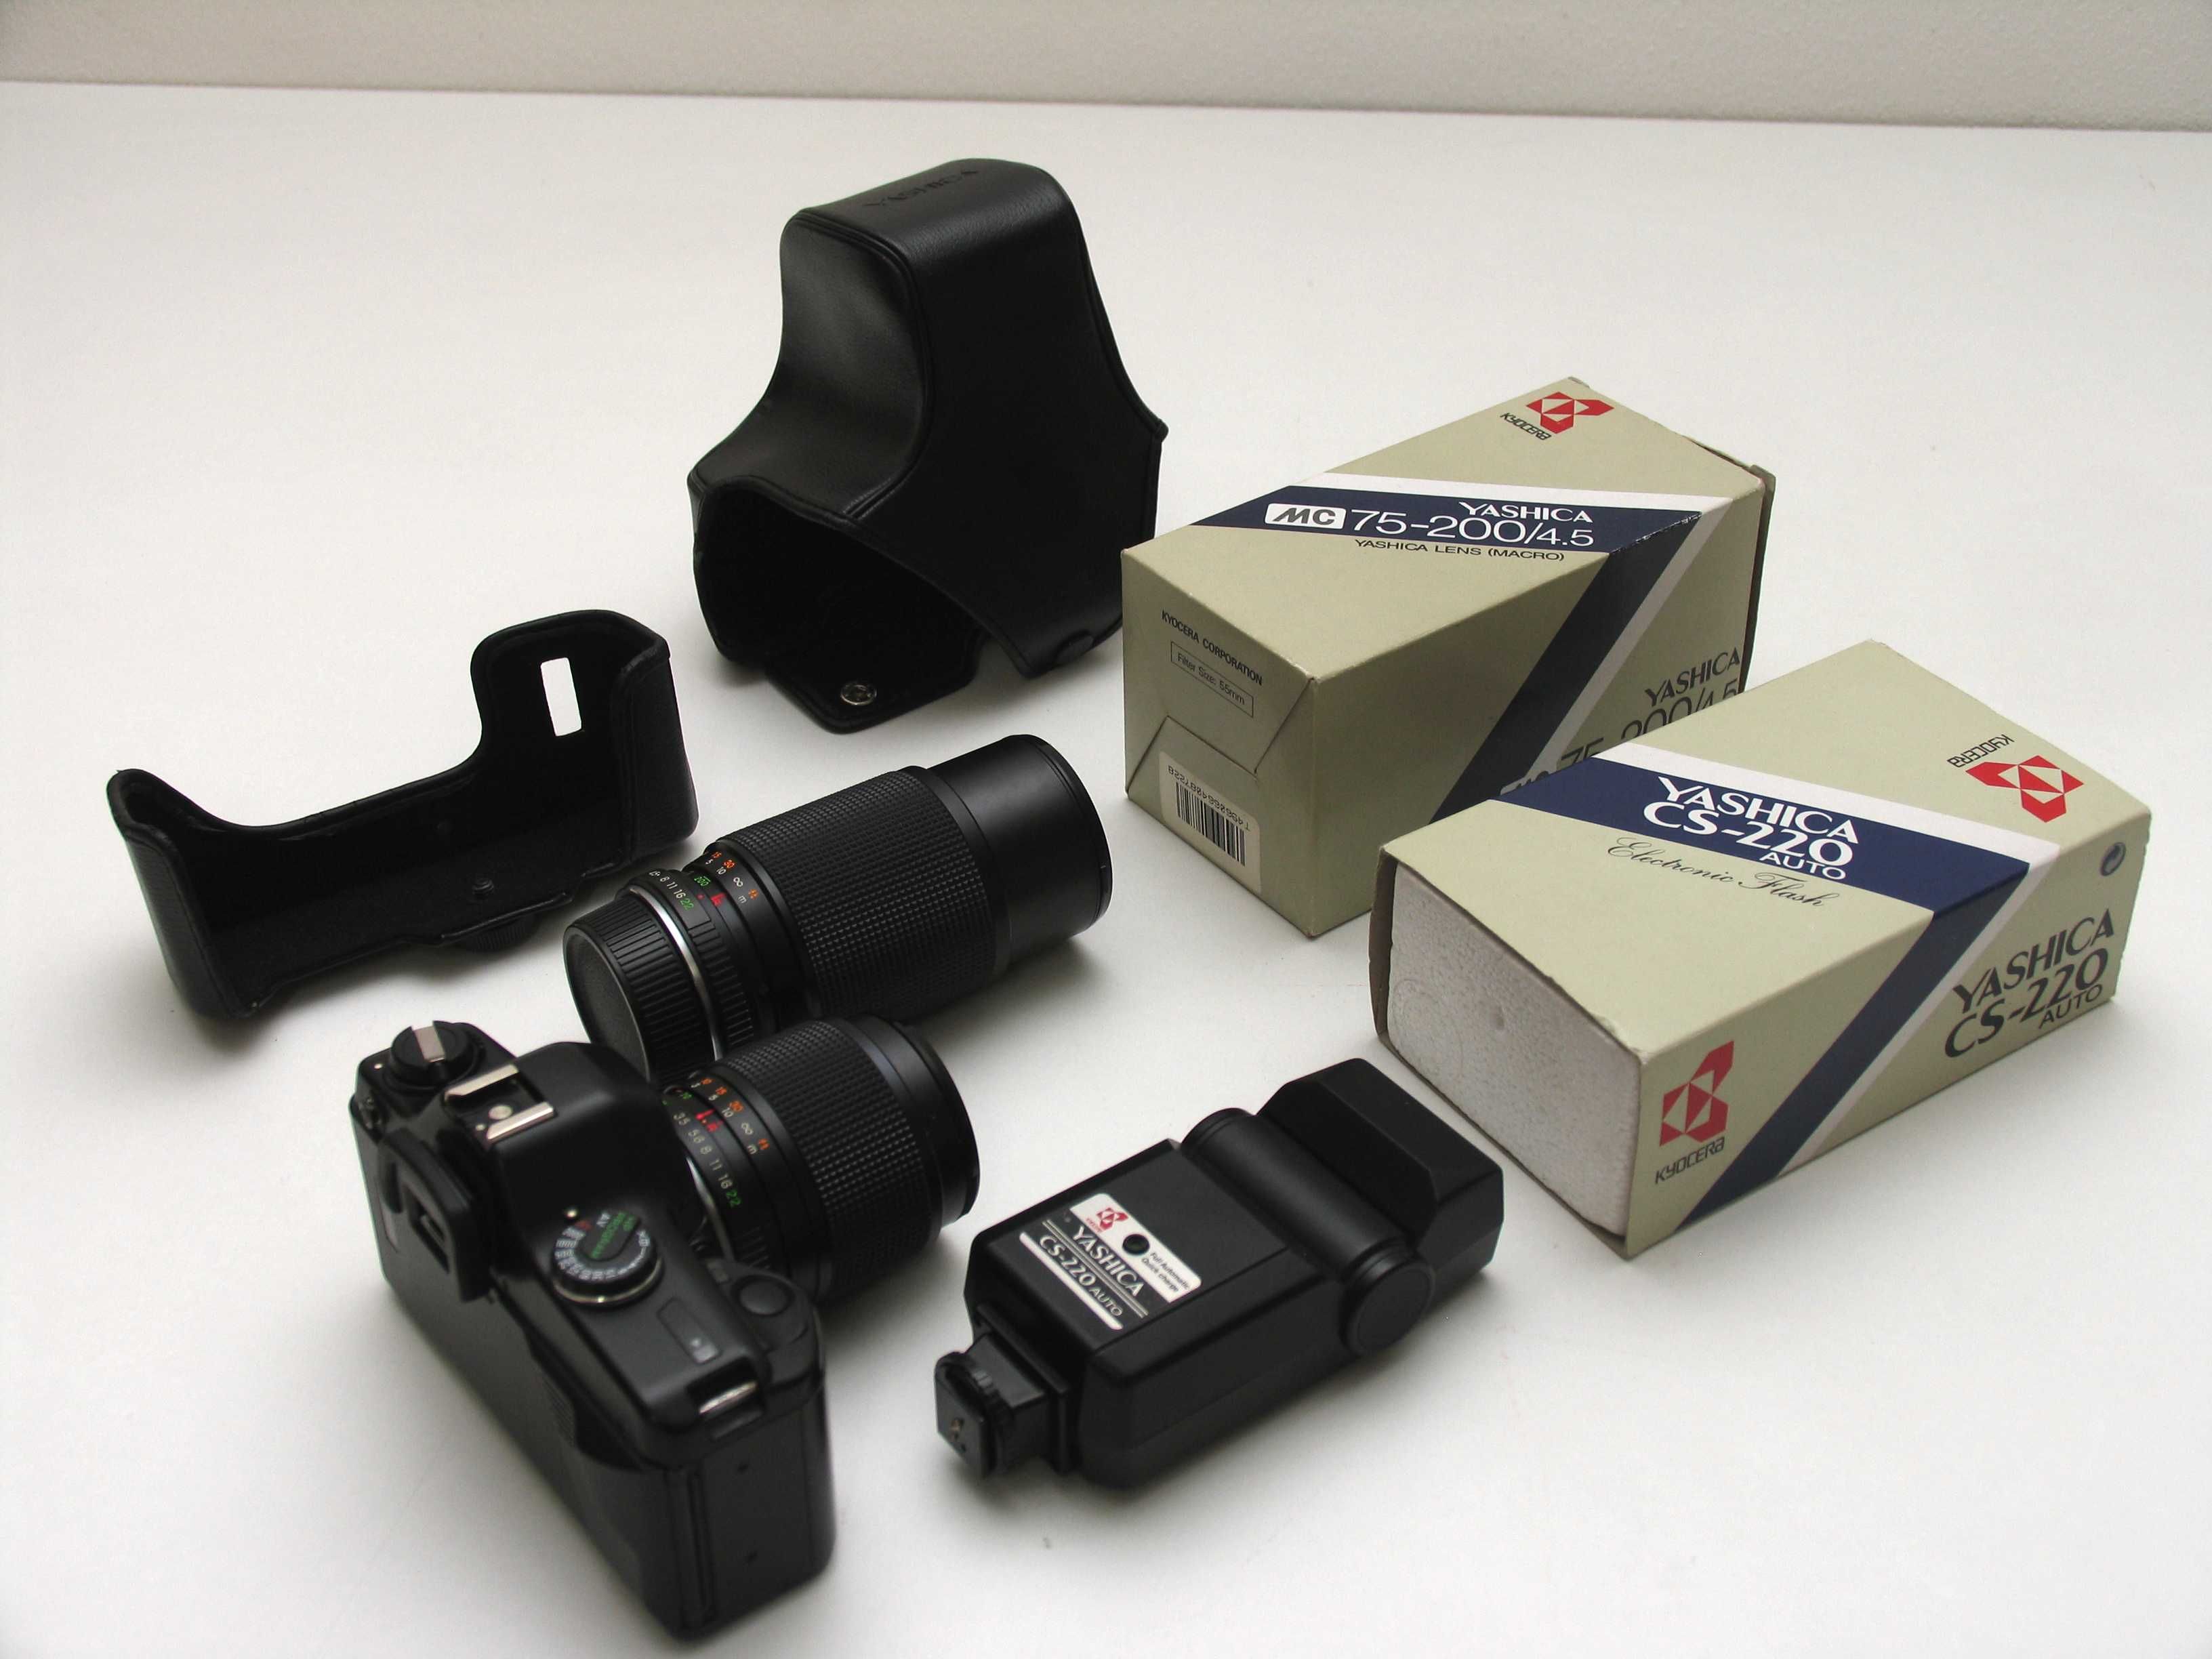 Yashica D108 Multiprogram 35mm SLR